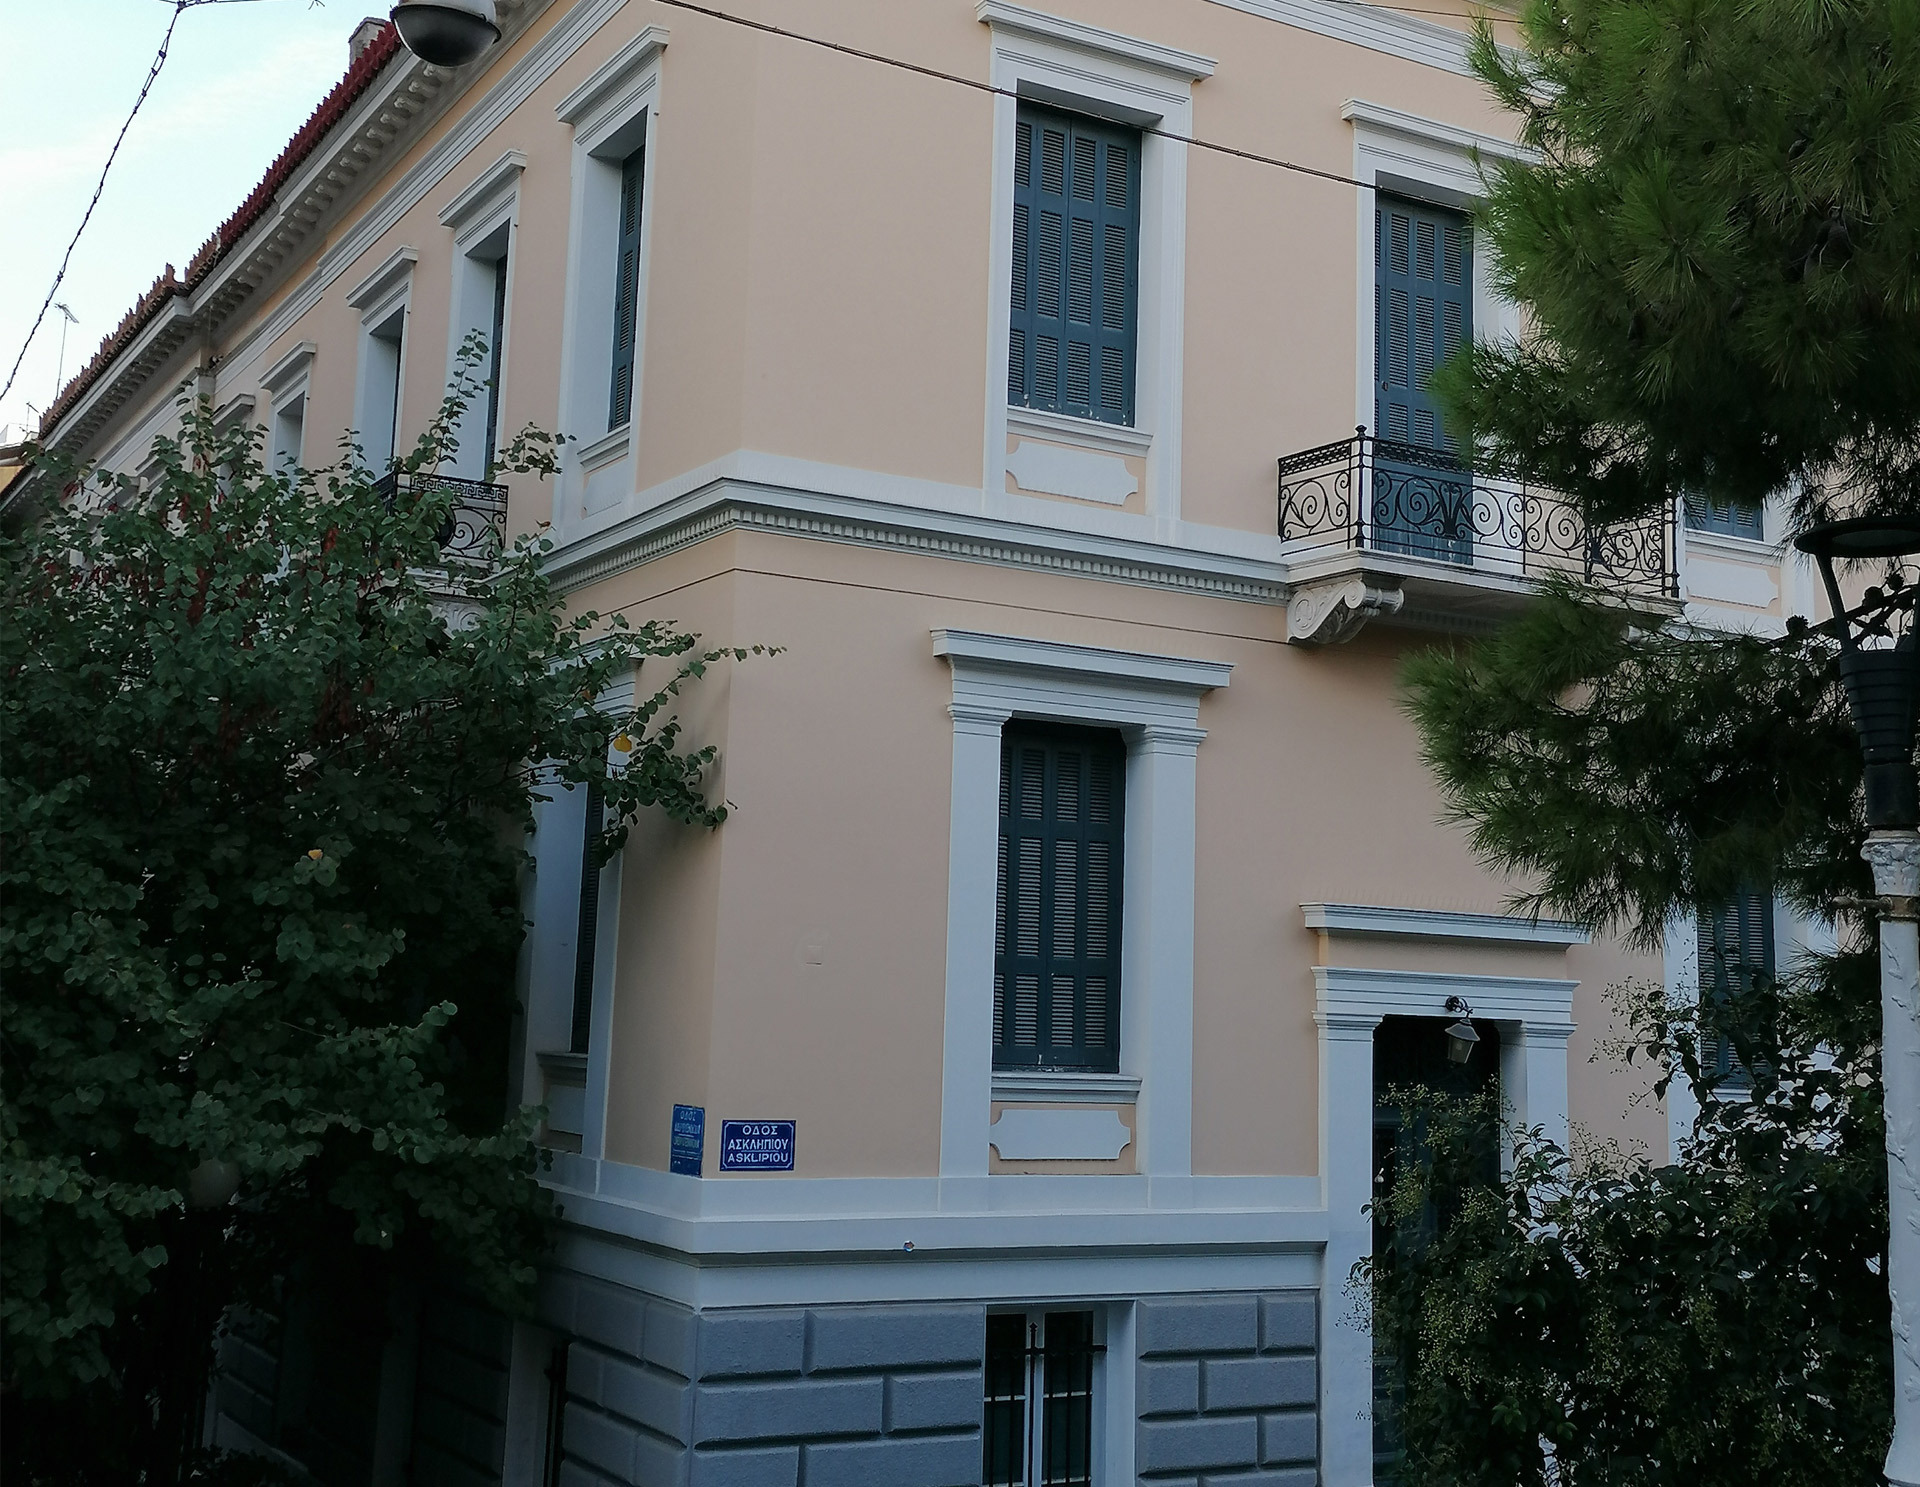 Νεάπολη, Οδός Ασκληπιού & Δερβενίων. Πολυκατοικία Θων. Μία από τις πρώτες της Αθήνας. Διατηρητέο κτίριο